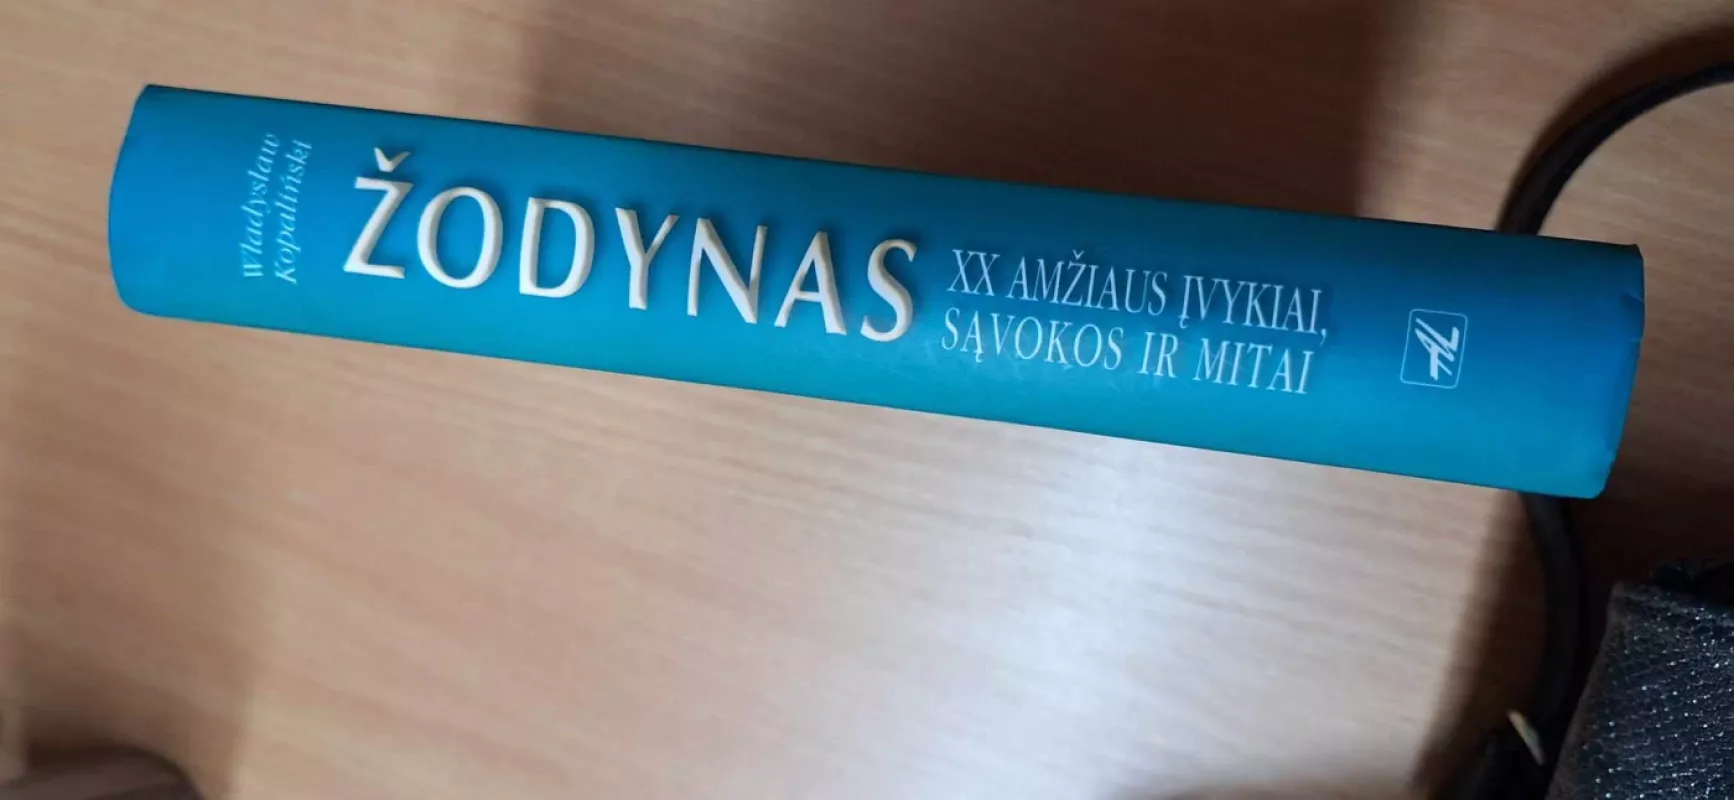 Žodynas. XX amžiaus įvykiai, sąvokos ir mitai - Władysław Kopaliński, knyga 2